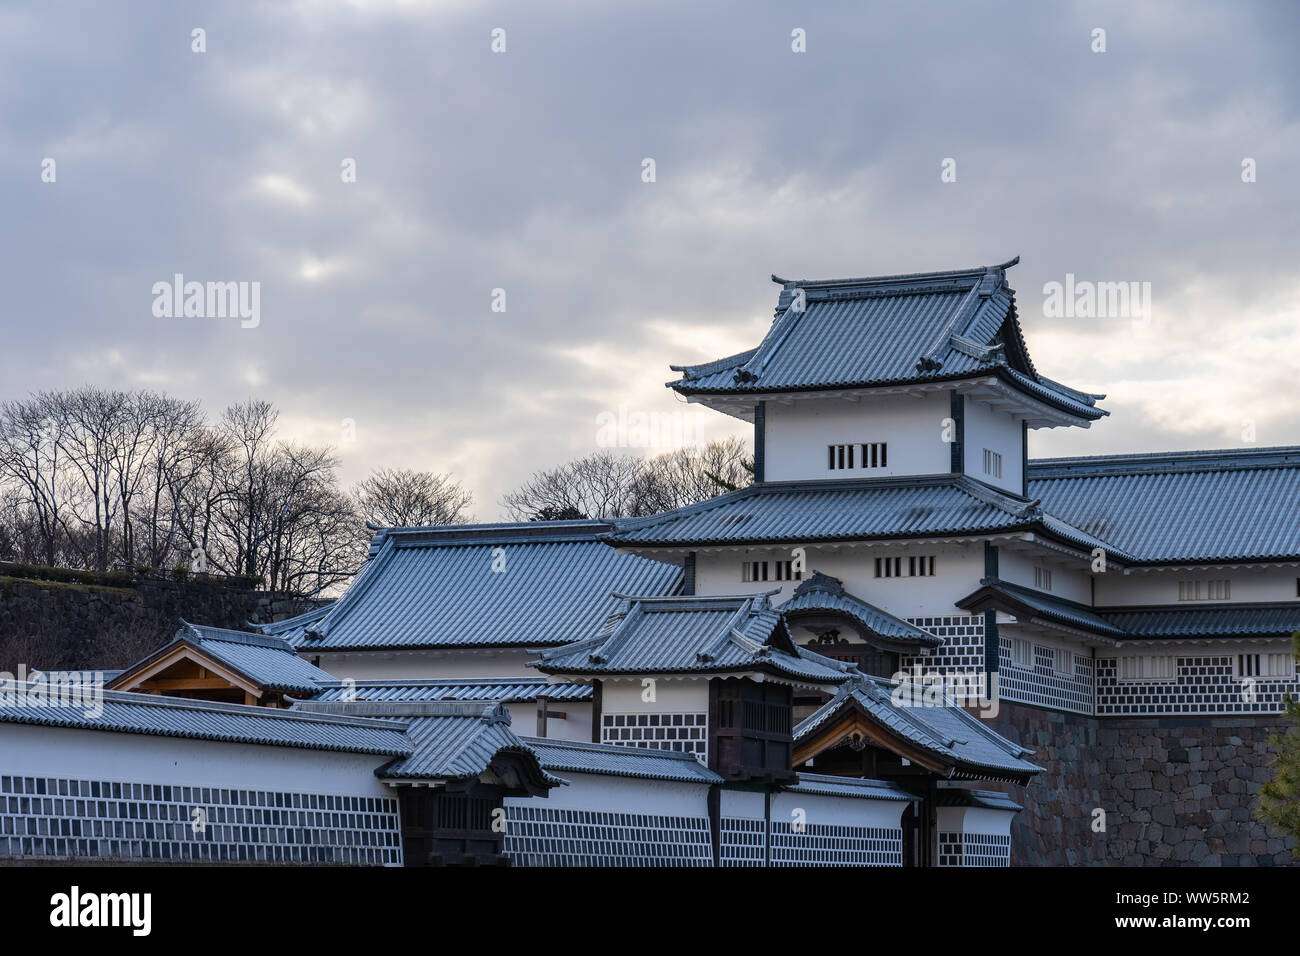 Kanazawa, Japon - février 14, 2019 : le château de Kanazawa Kanazawa, dans la préfecture d'Ishikawa, Japon. Banque D'Images